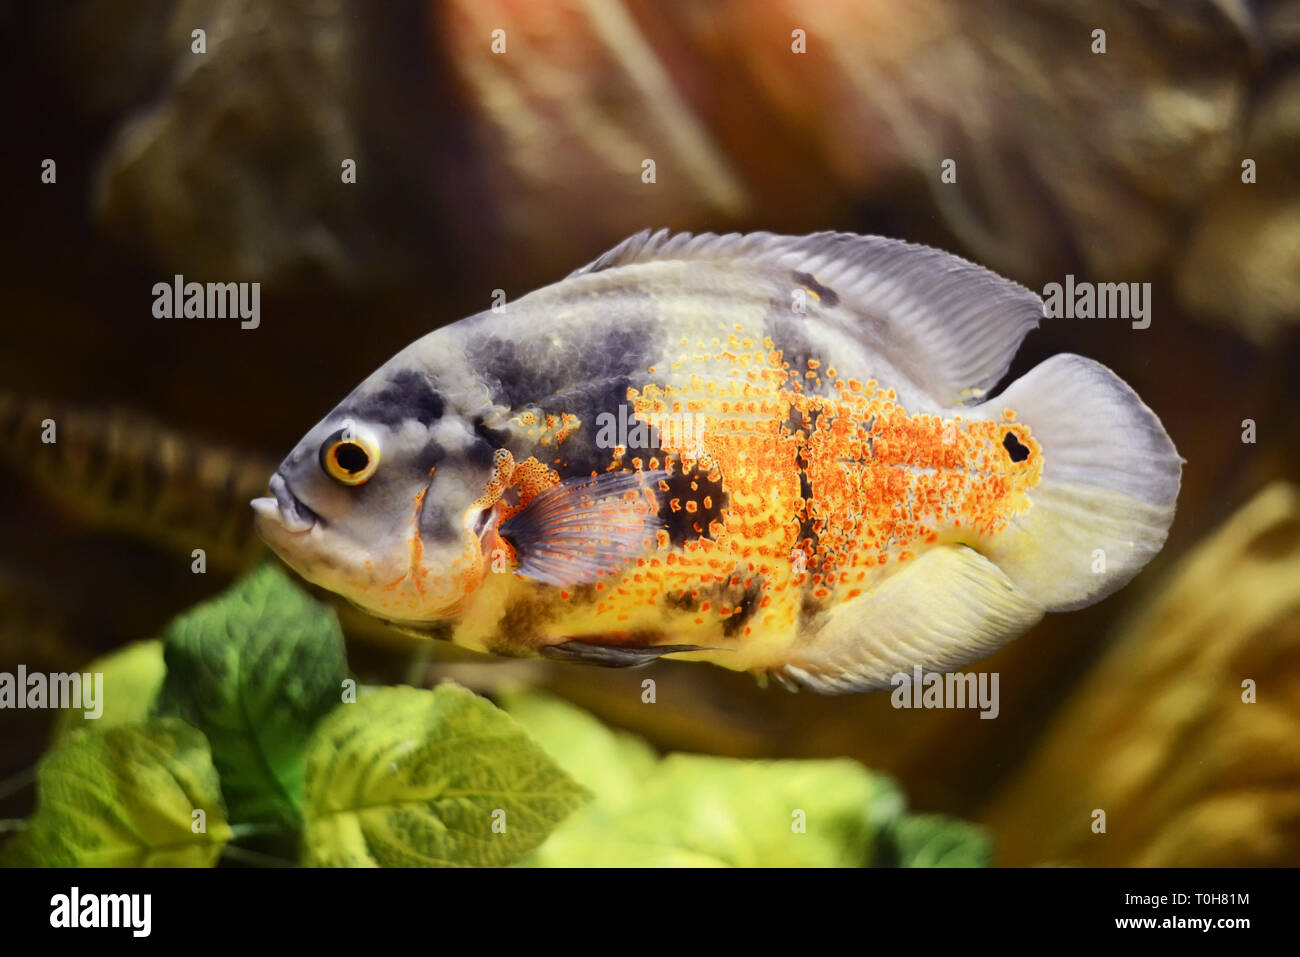 Oscar fish, Astronotus ocellatus, Marble fish in aquarium Stock Photo